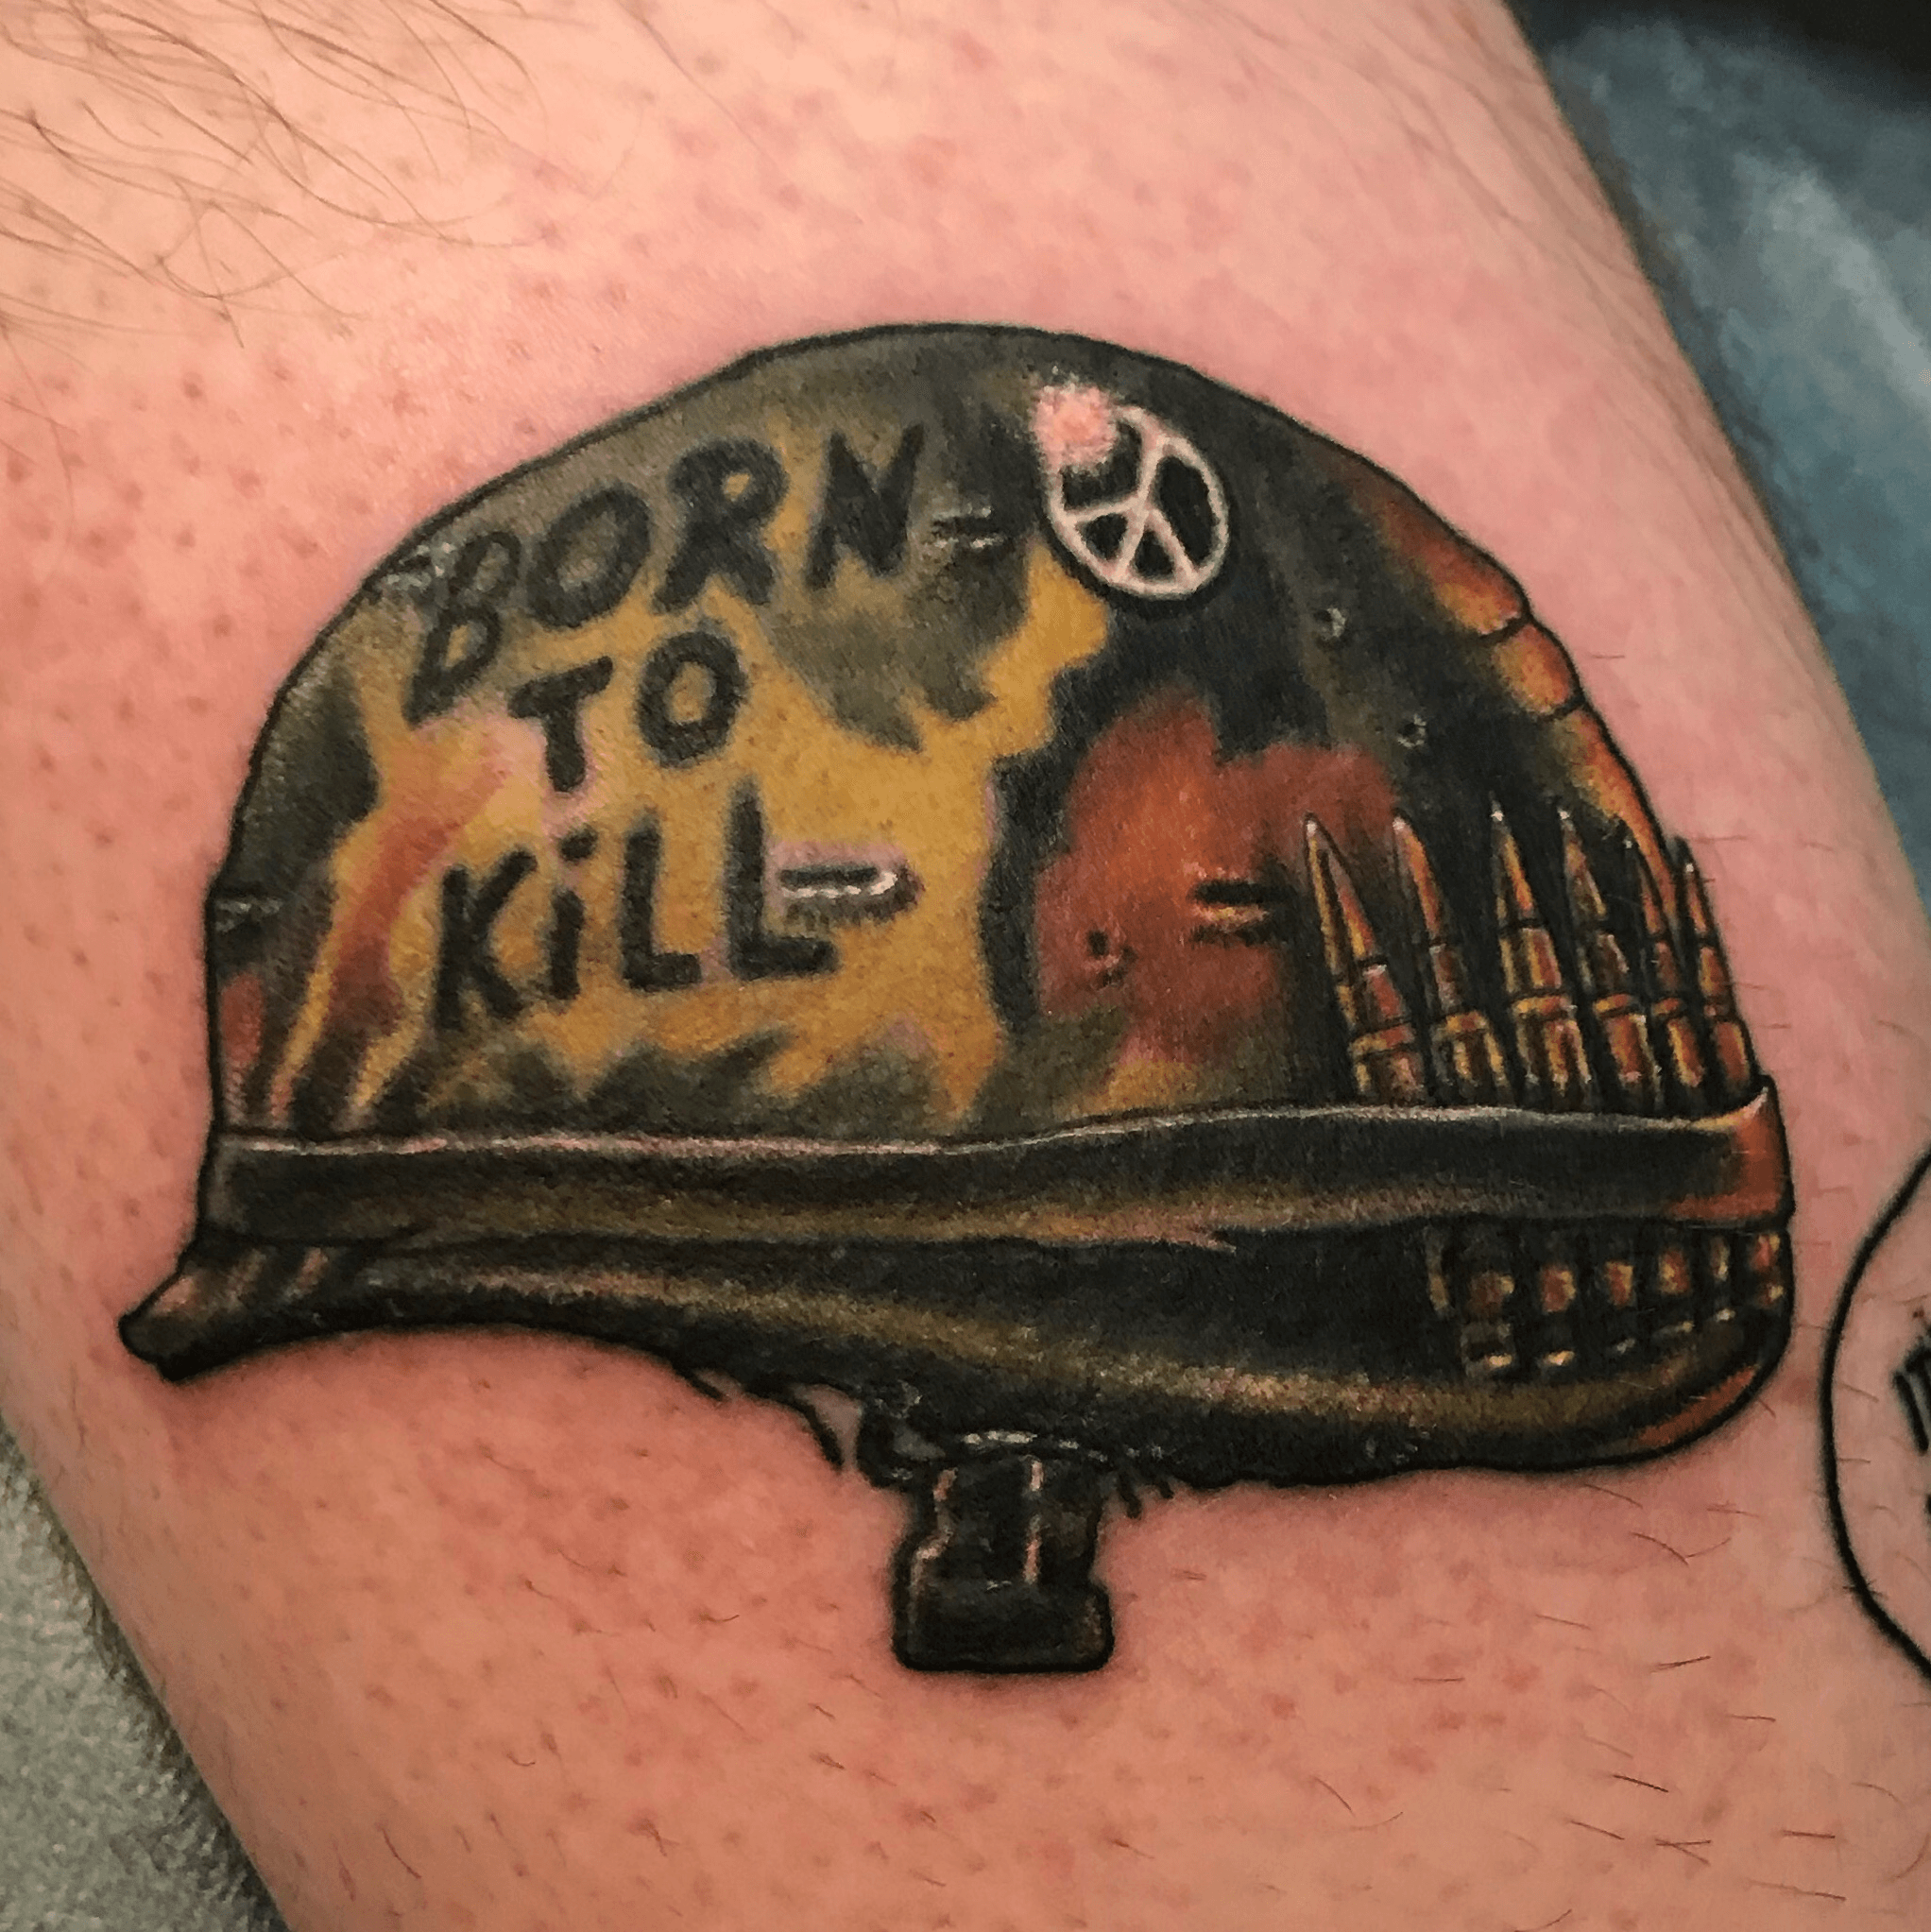 Born to kill tattoo designs